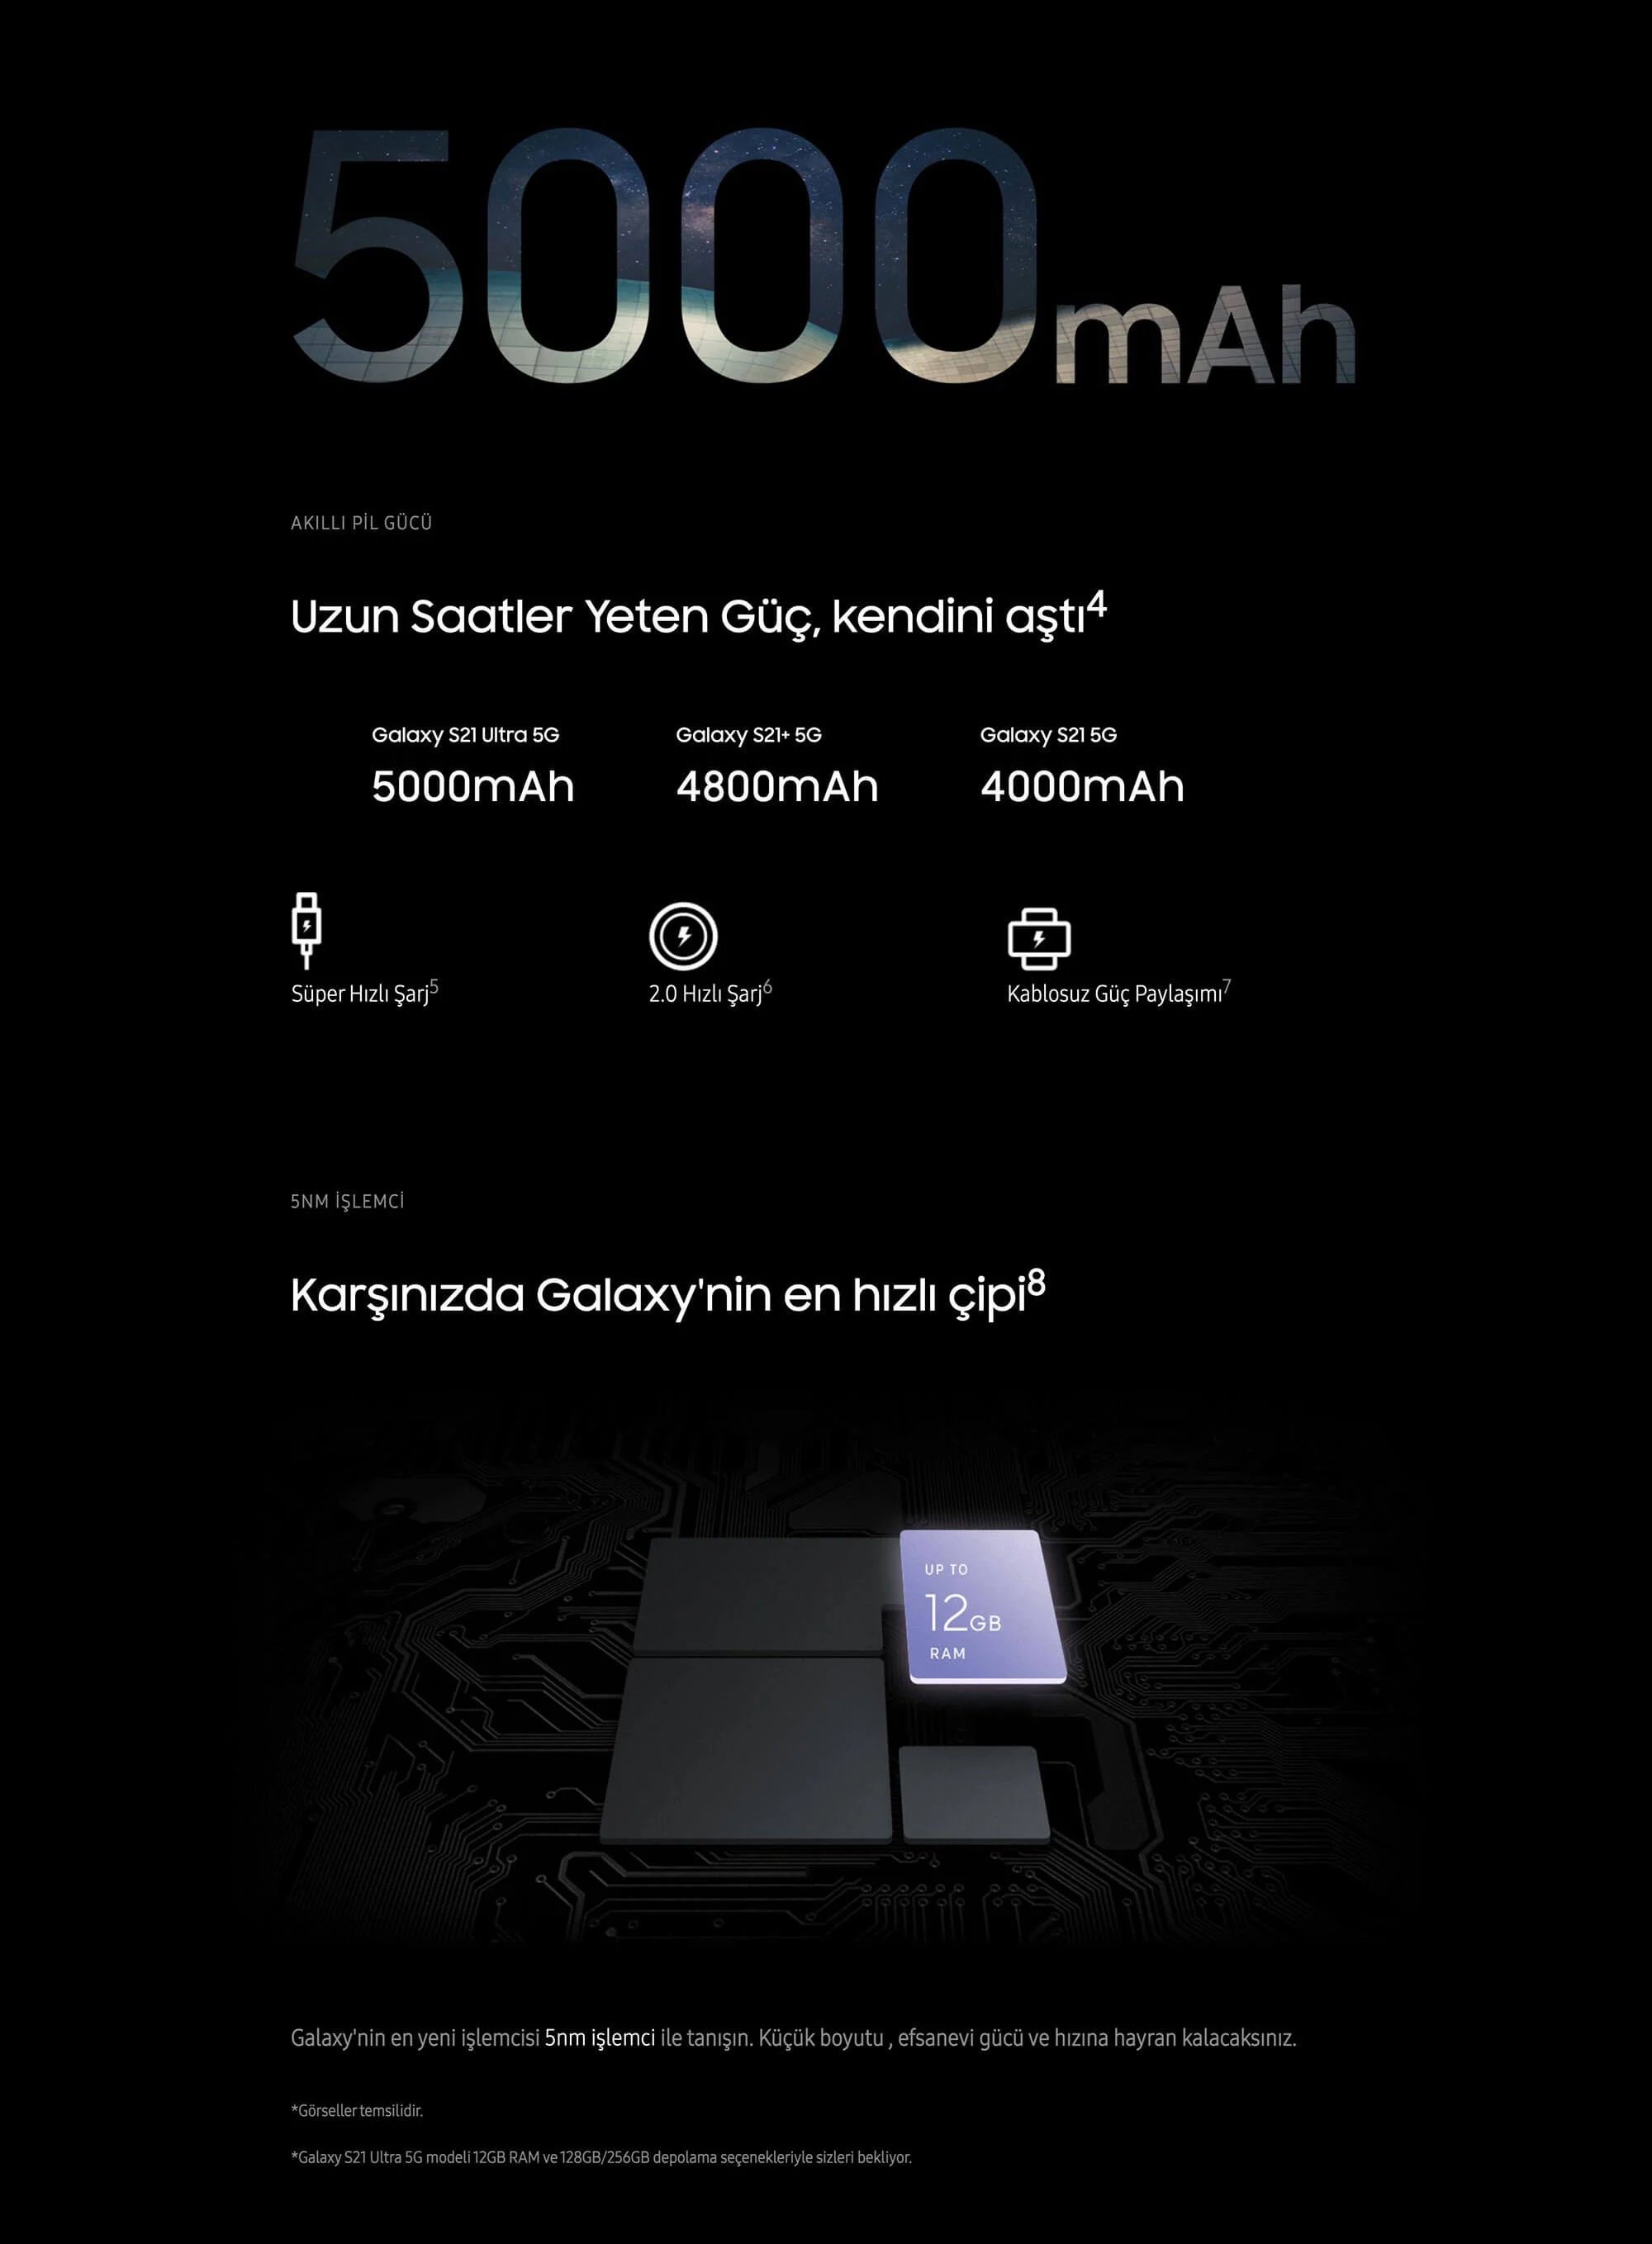 Samsung Galaxy S21 5G 128GB 8GB Ram 6.3 inç 64MP Cep Telefonu uzun saatler yeten güçlü pil